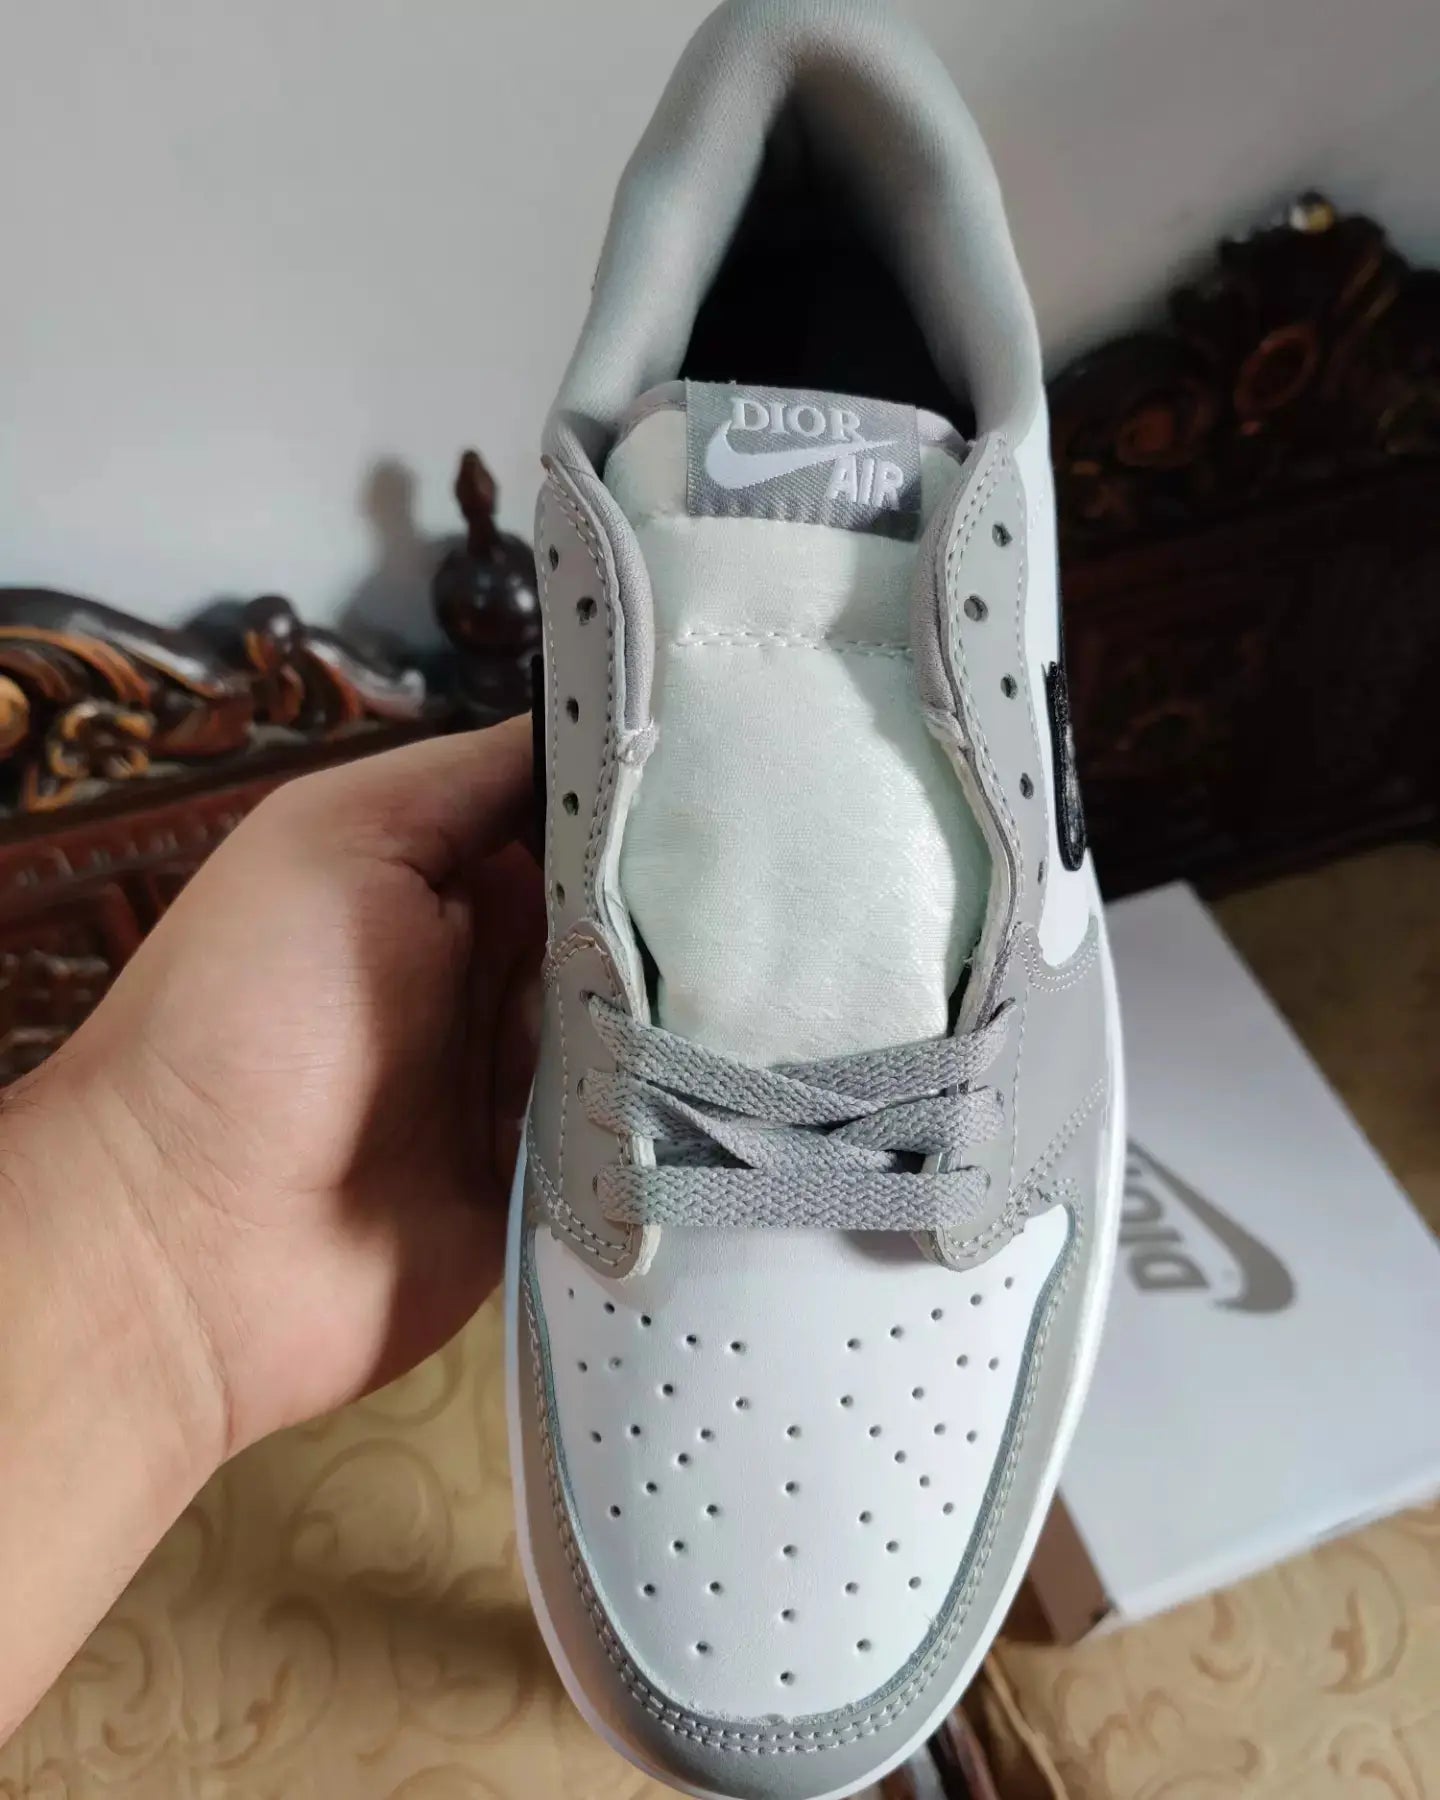 Nike Air Jordan 1 Retro Low X "Dior" Sneak Kicks